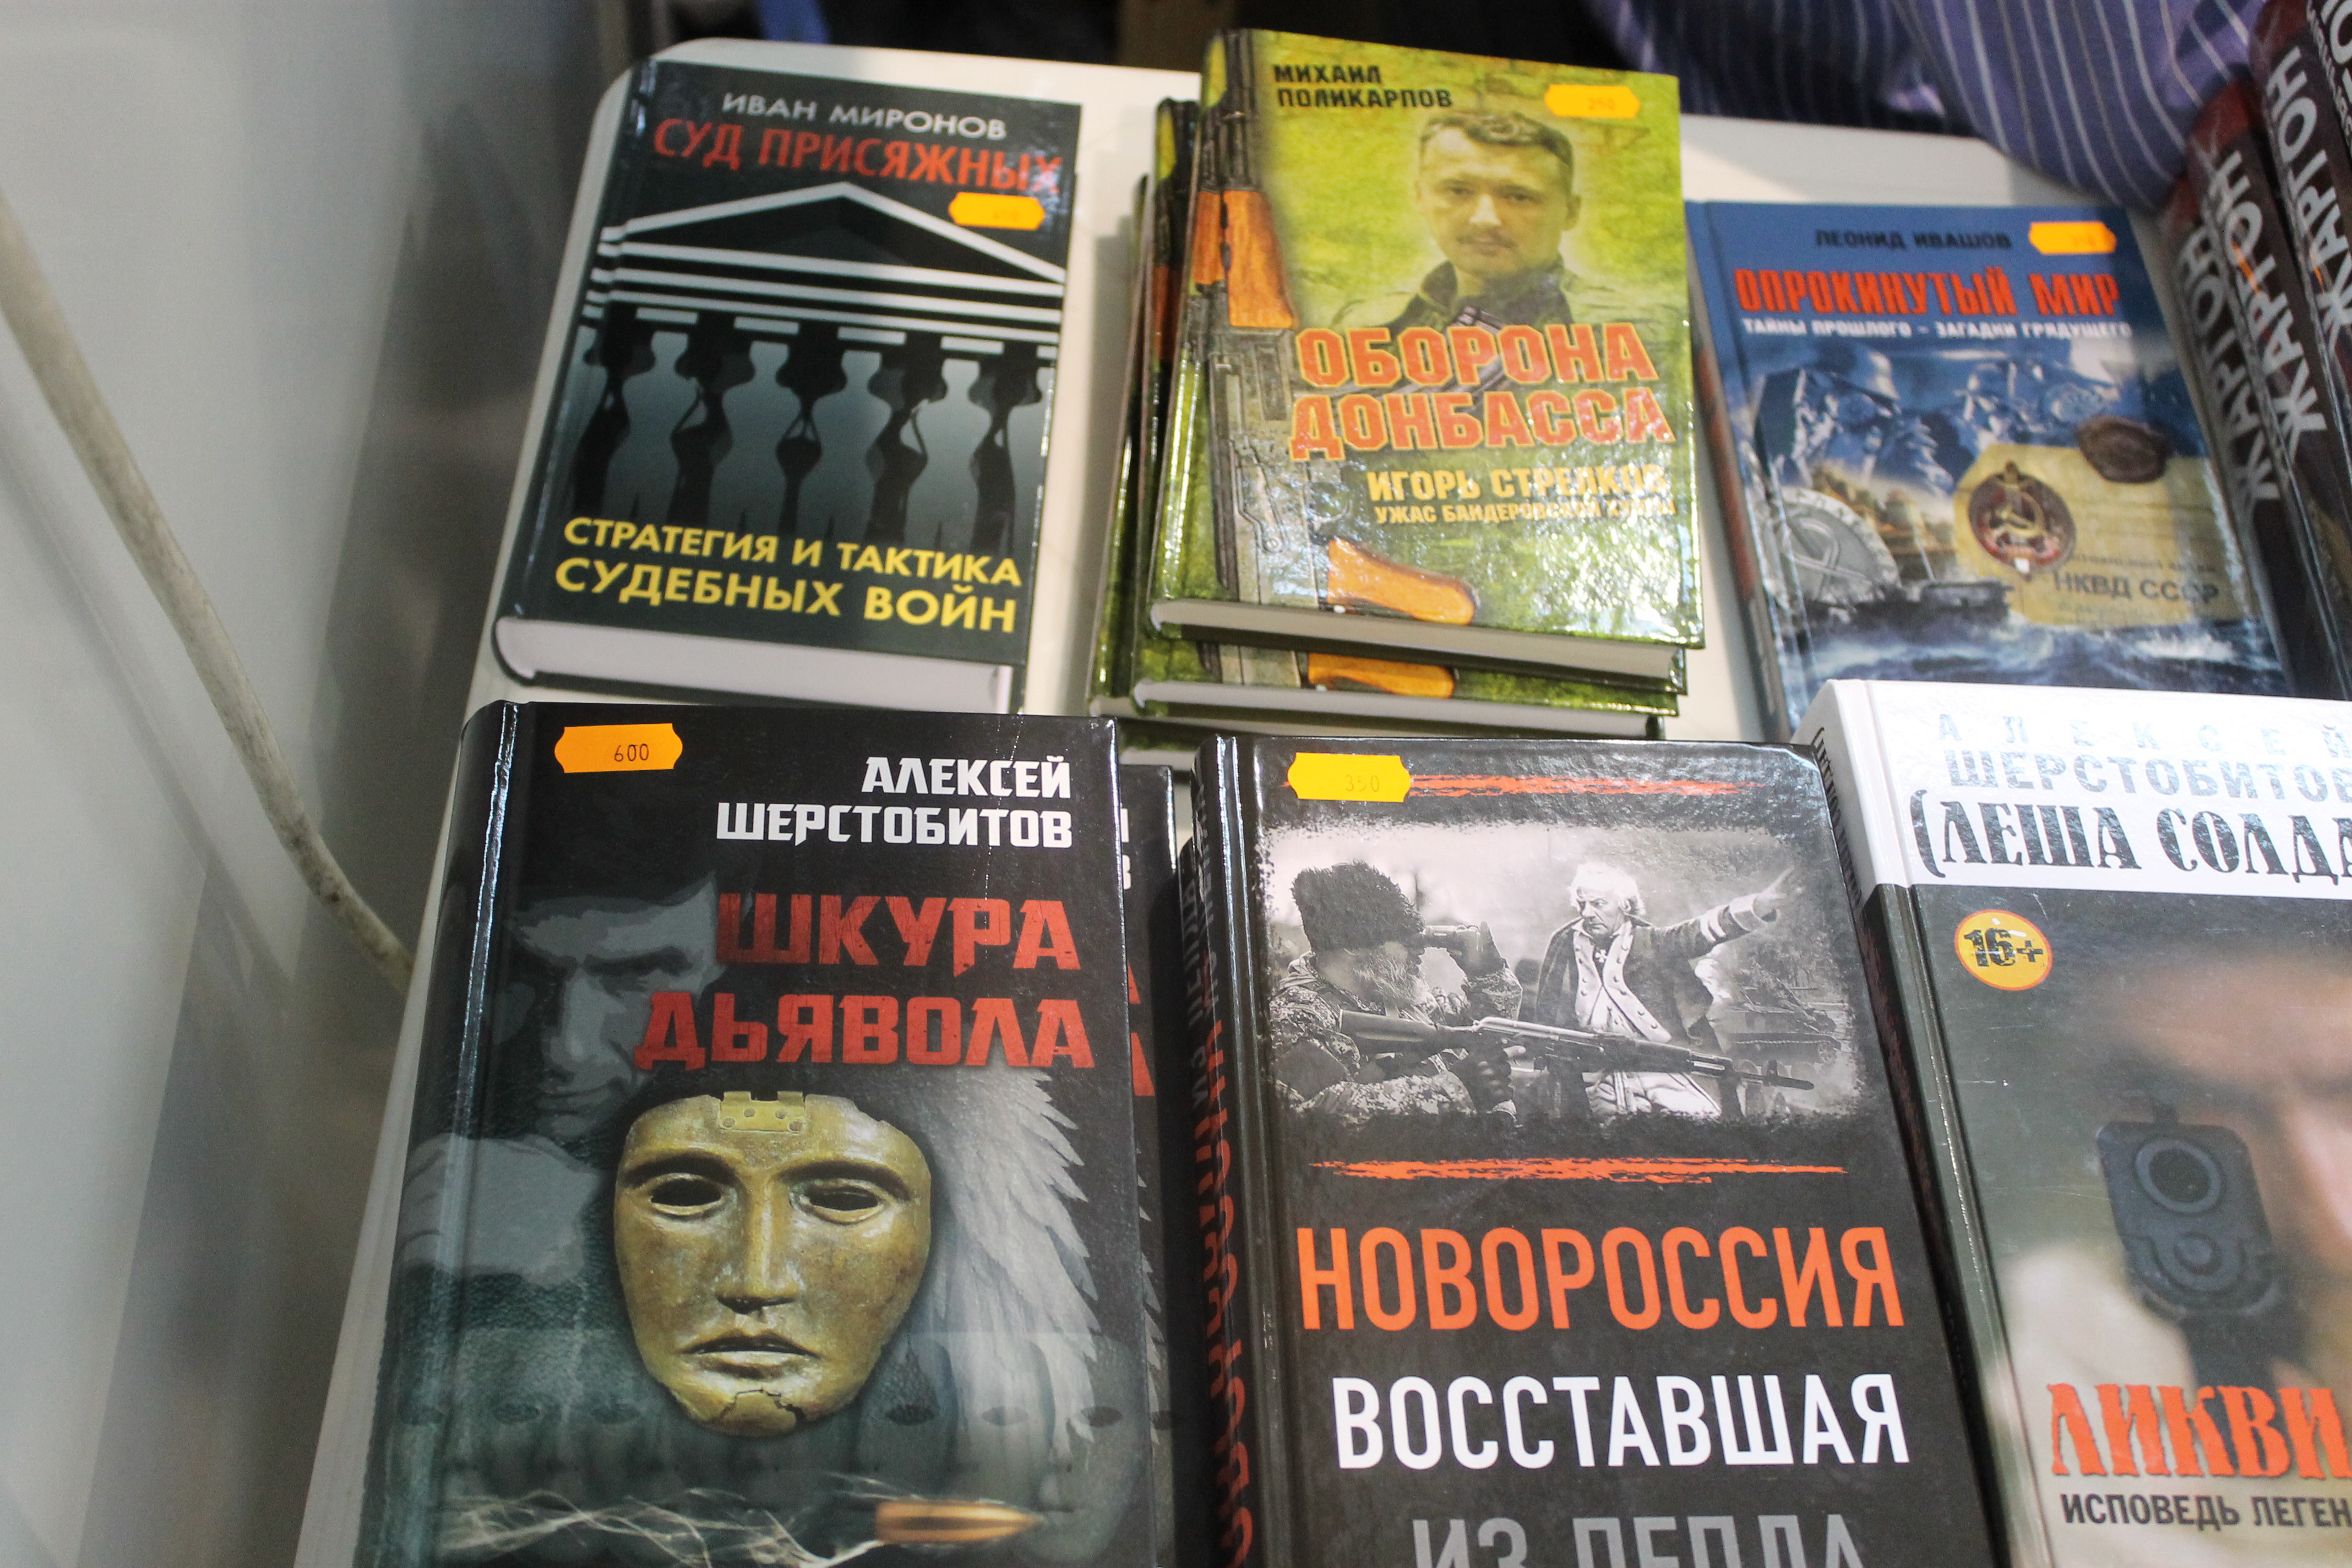 «Карать карателей», «Ужас бандеровской хунты» — книжные новинки Международной выставки в Москве